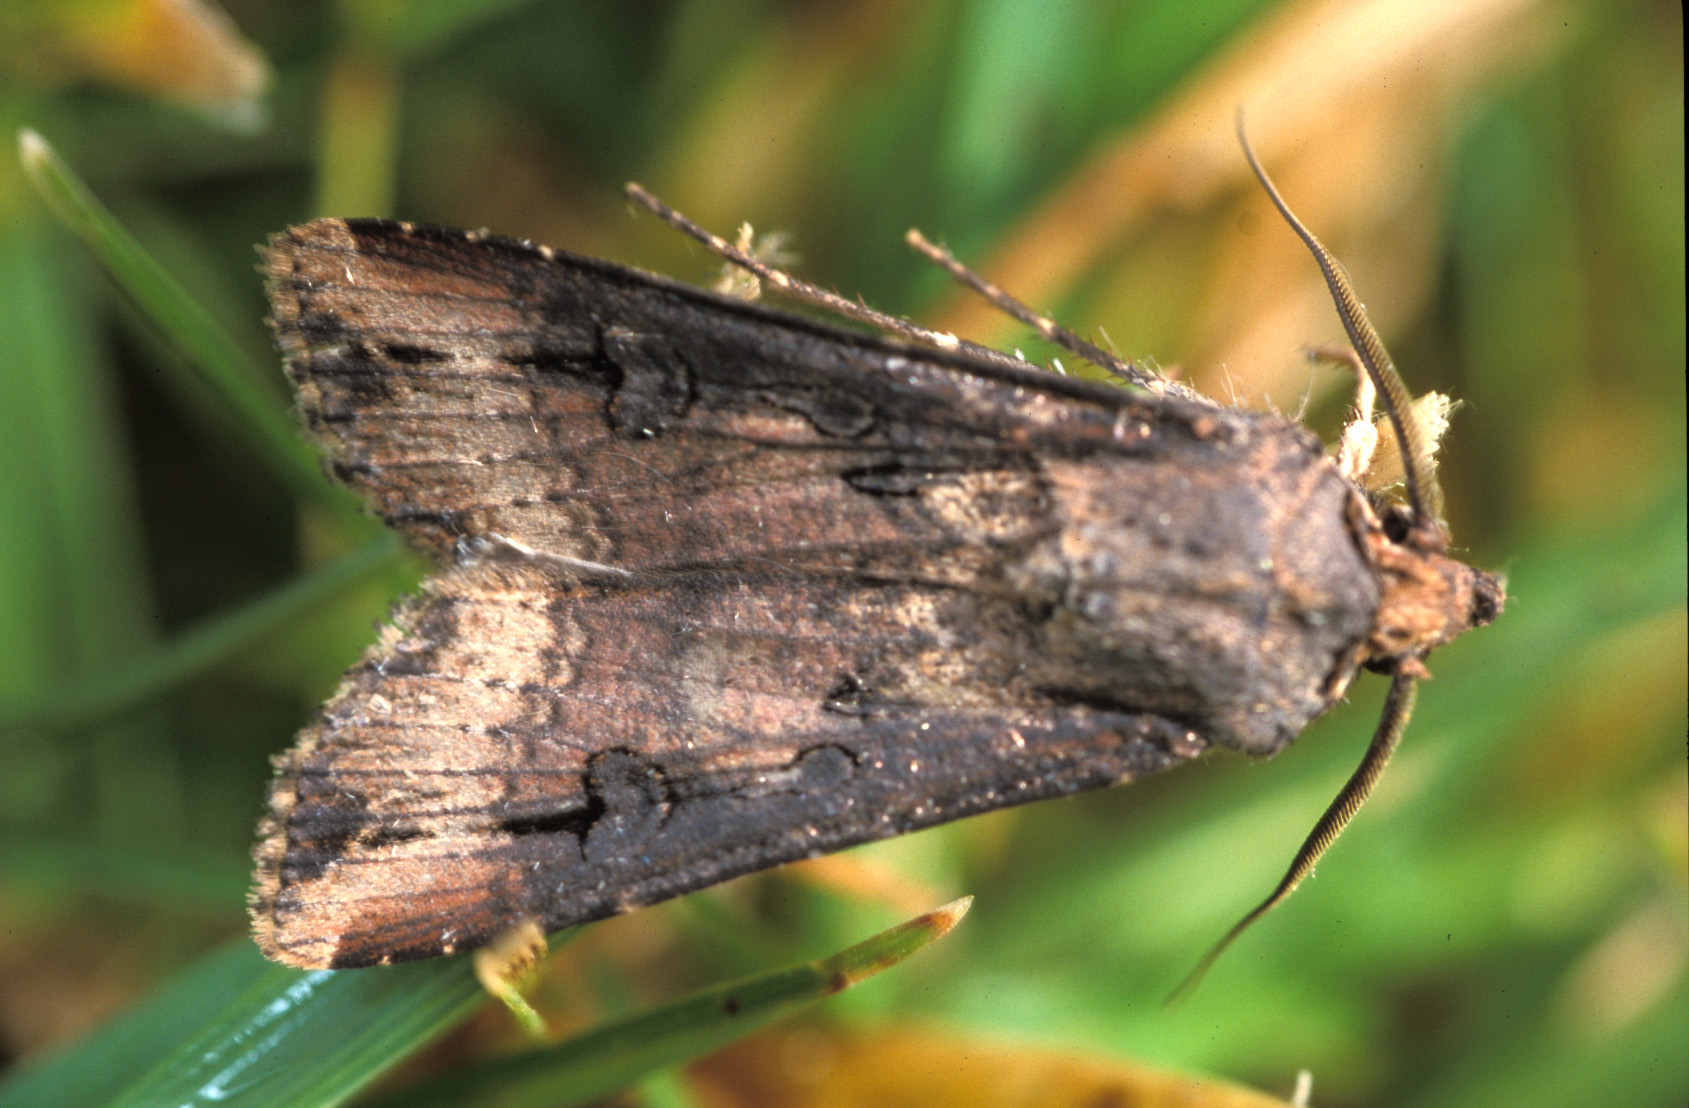 Adult black cutworm moth